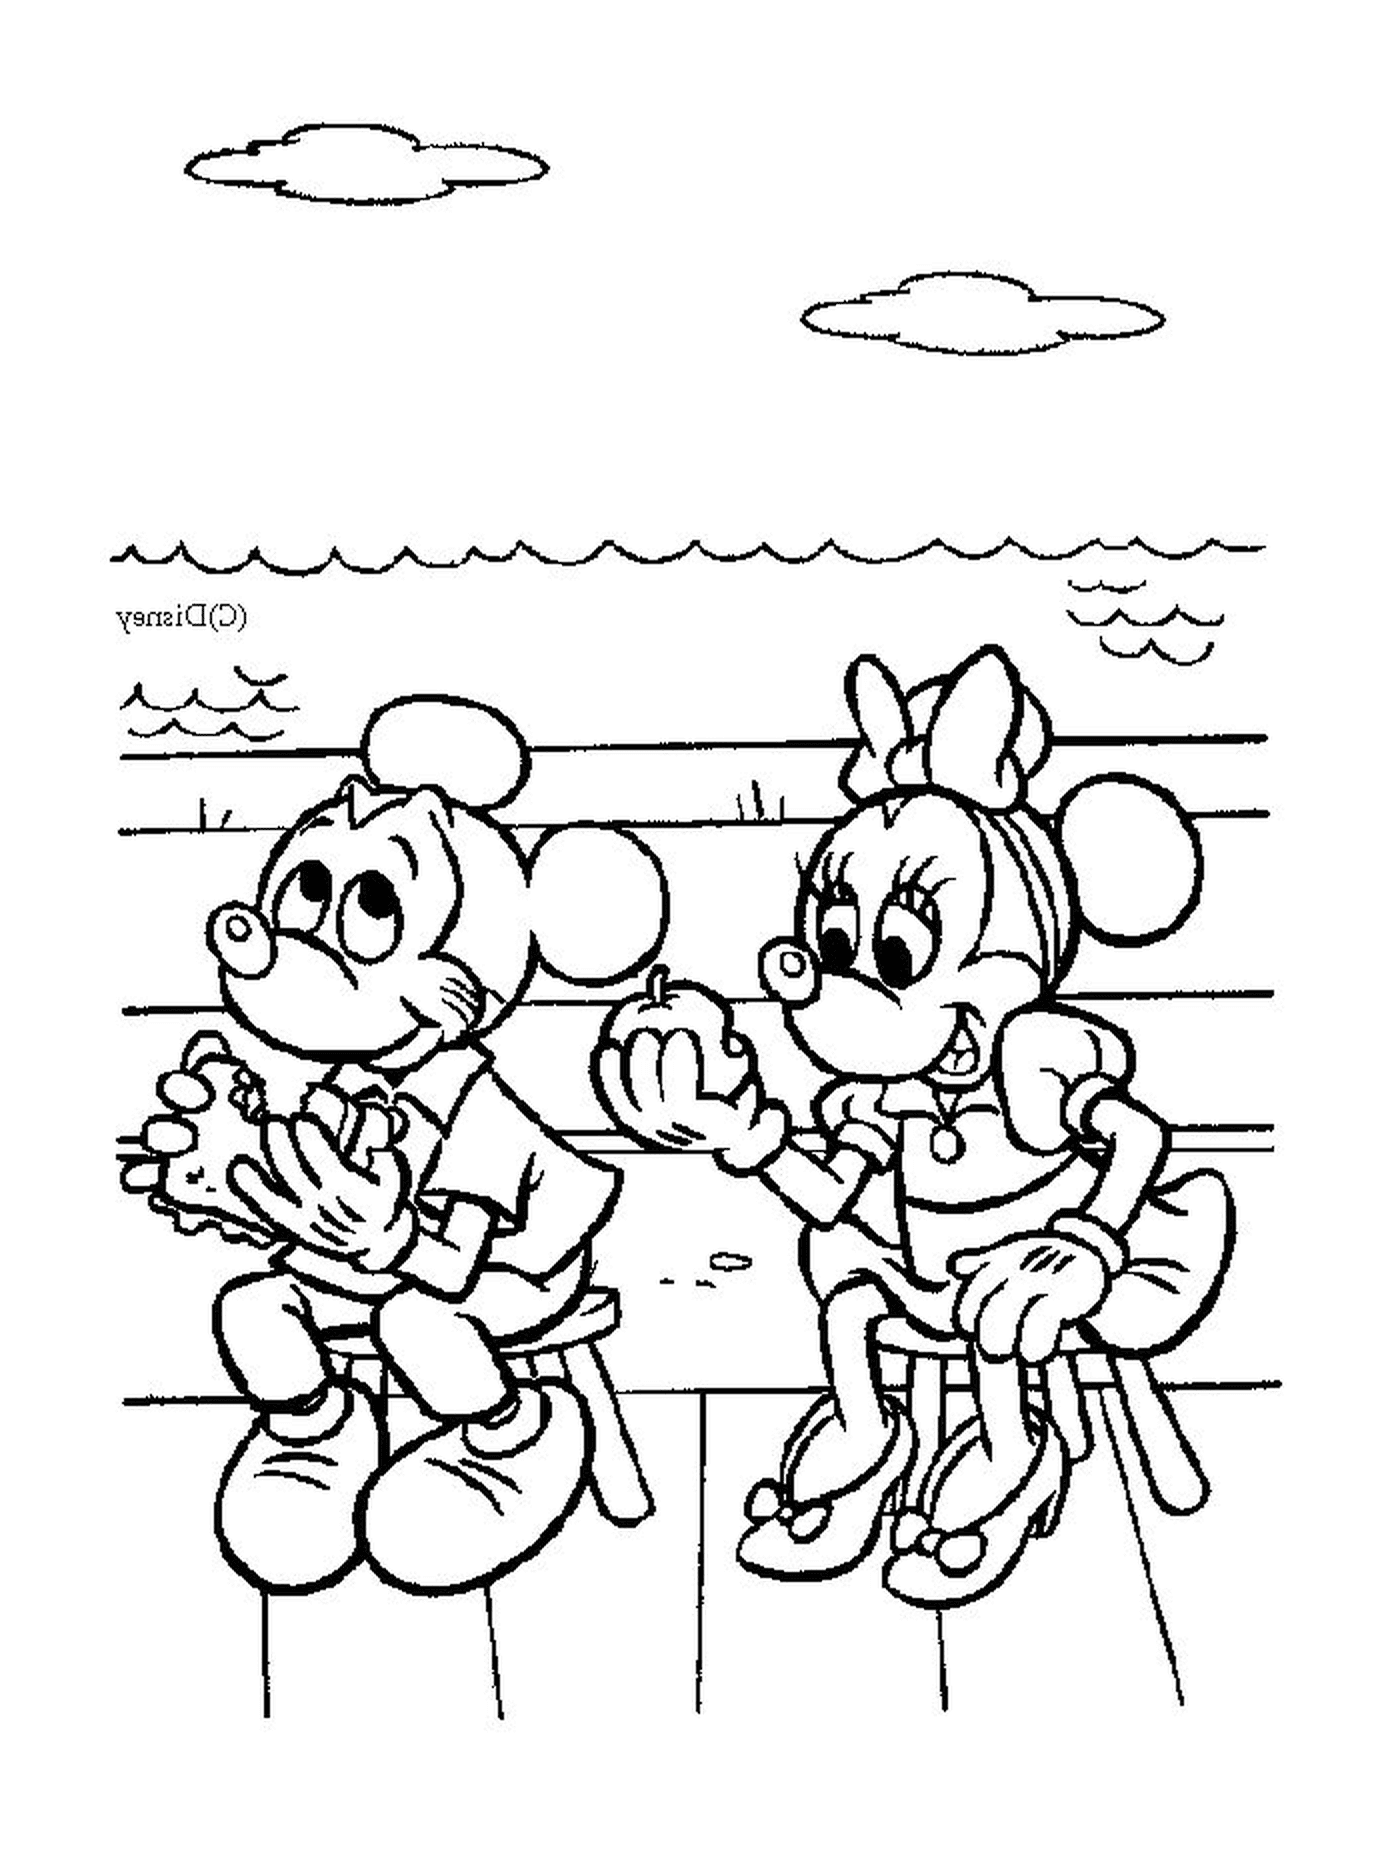  Mickey Mouse und Minnie Mouse sitzen auf einer Bank 